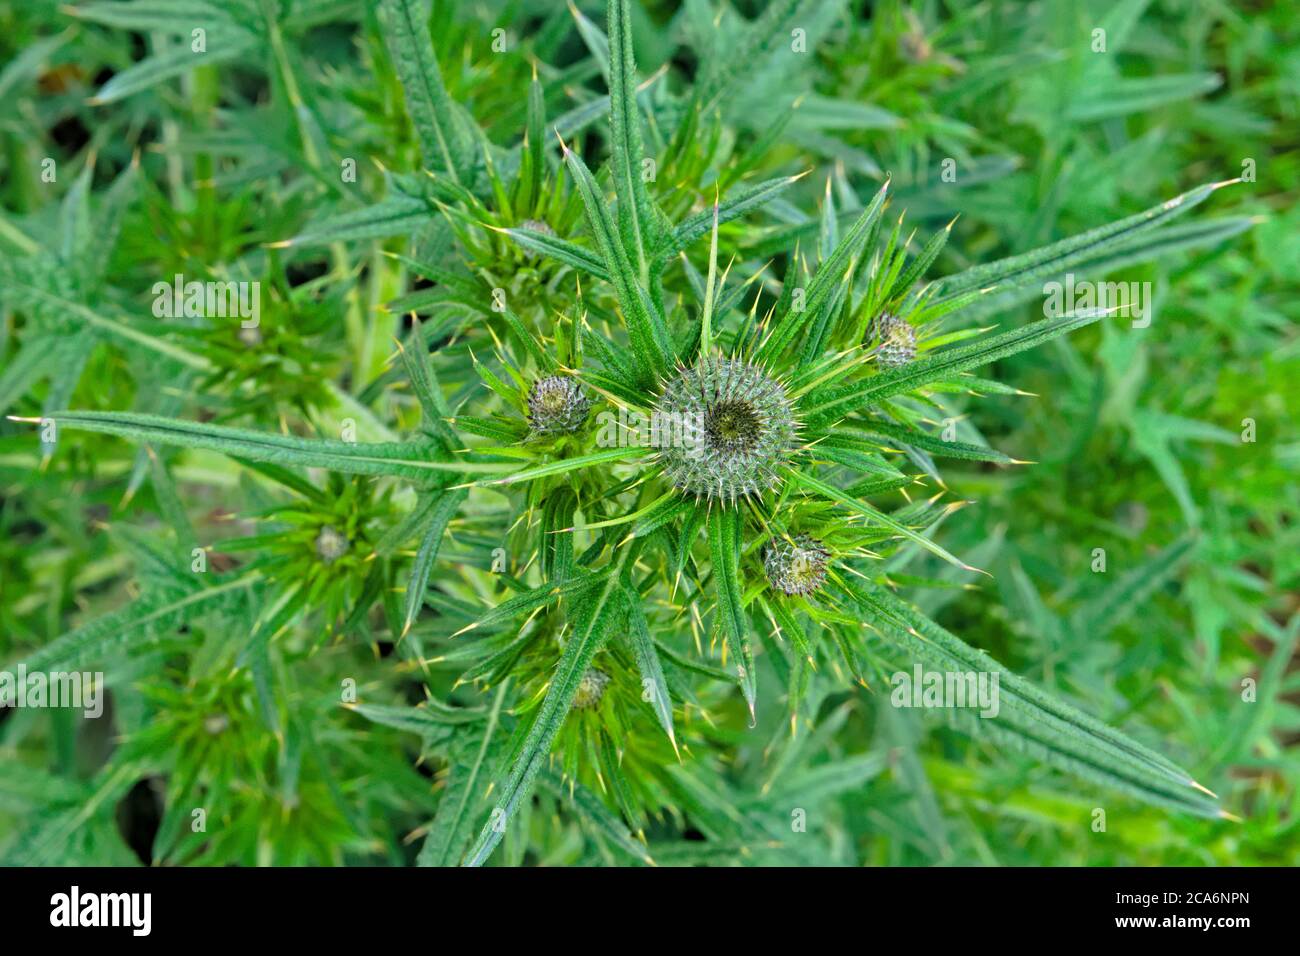 Nahaufnahme der Blattläppchen einer Speerdistel auch kwon als gewöhnliche Distel, wissenschaftlicher Name Cirsium vulgare Stockfoto